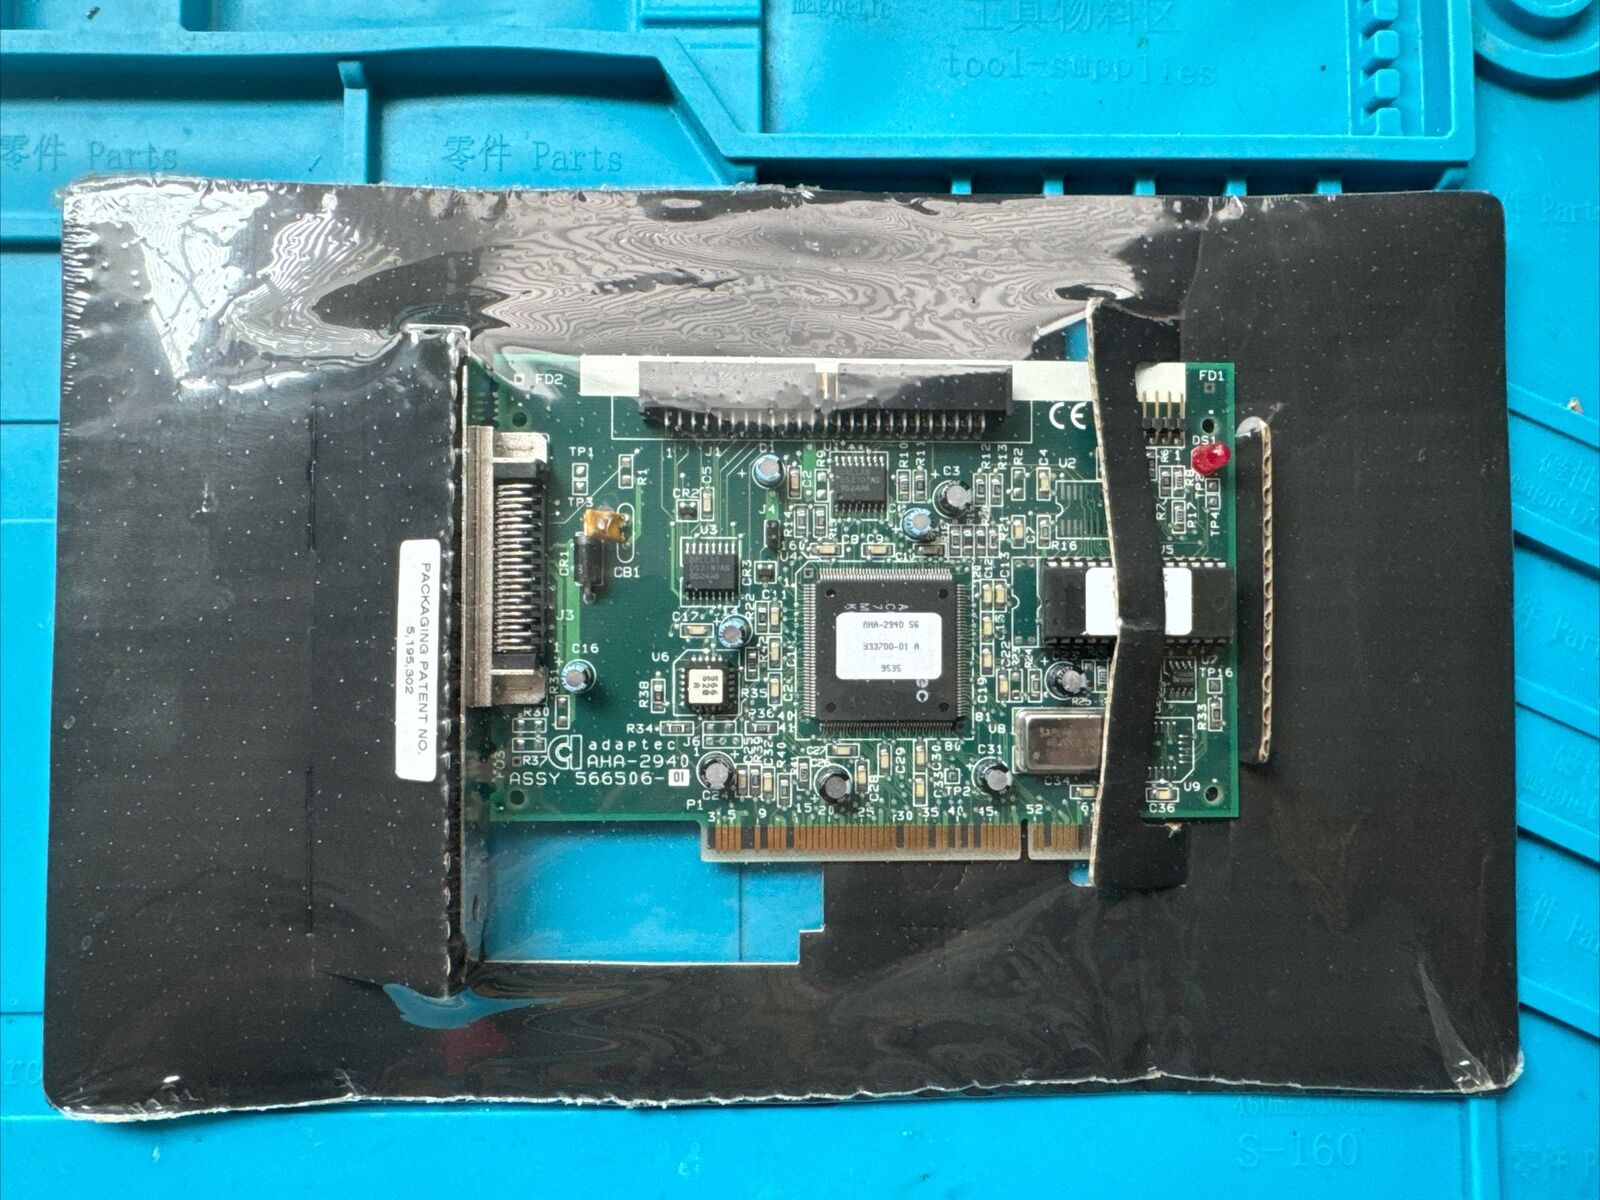 AHA-2940 S6 ADAPTEC PCI SCSI CONTROLLER , 566506-01